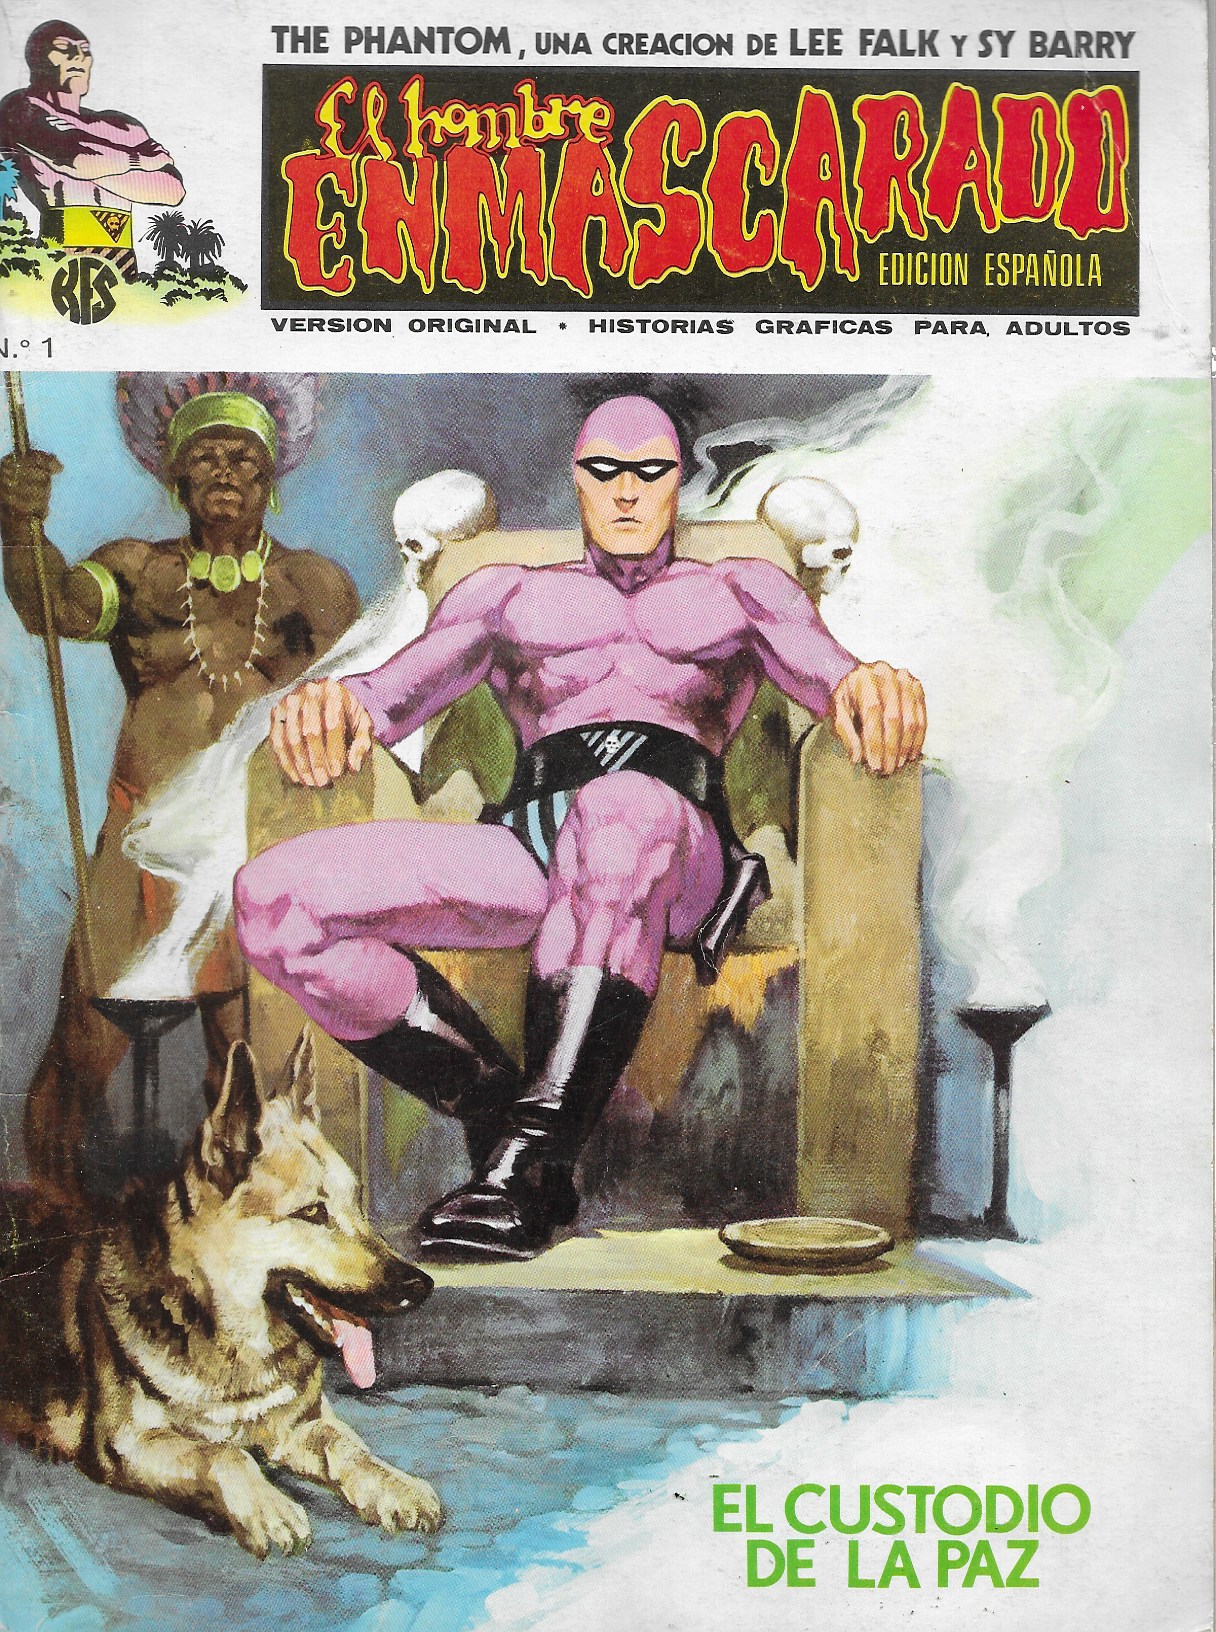 El Hombre Enmascarado. Vértice 1973. Colección completa (56 Ejemplares)